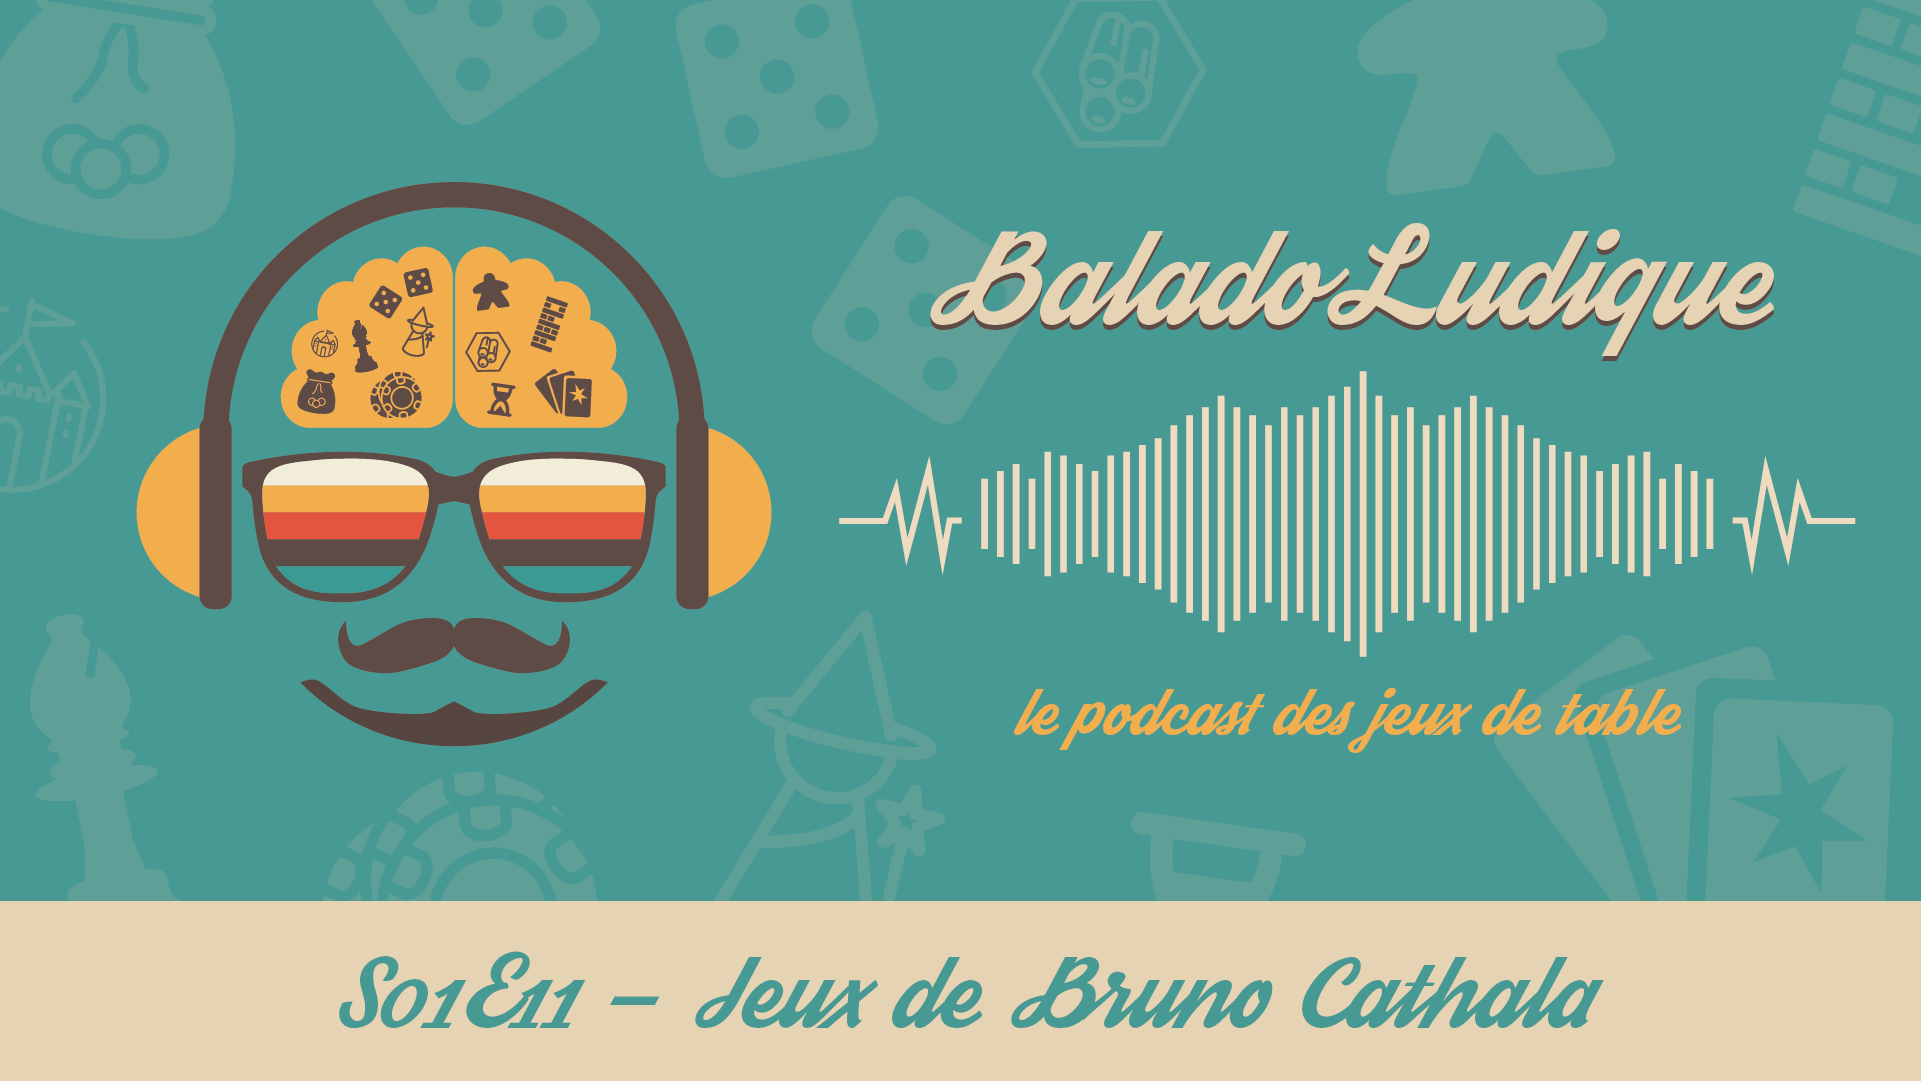 Jeux de Bruno Cathala - BaladoLudique - s01e11